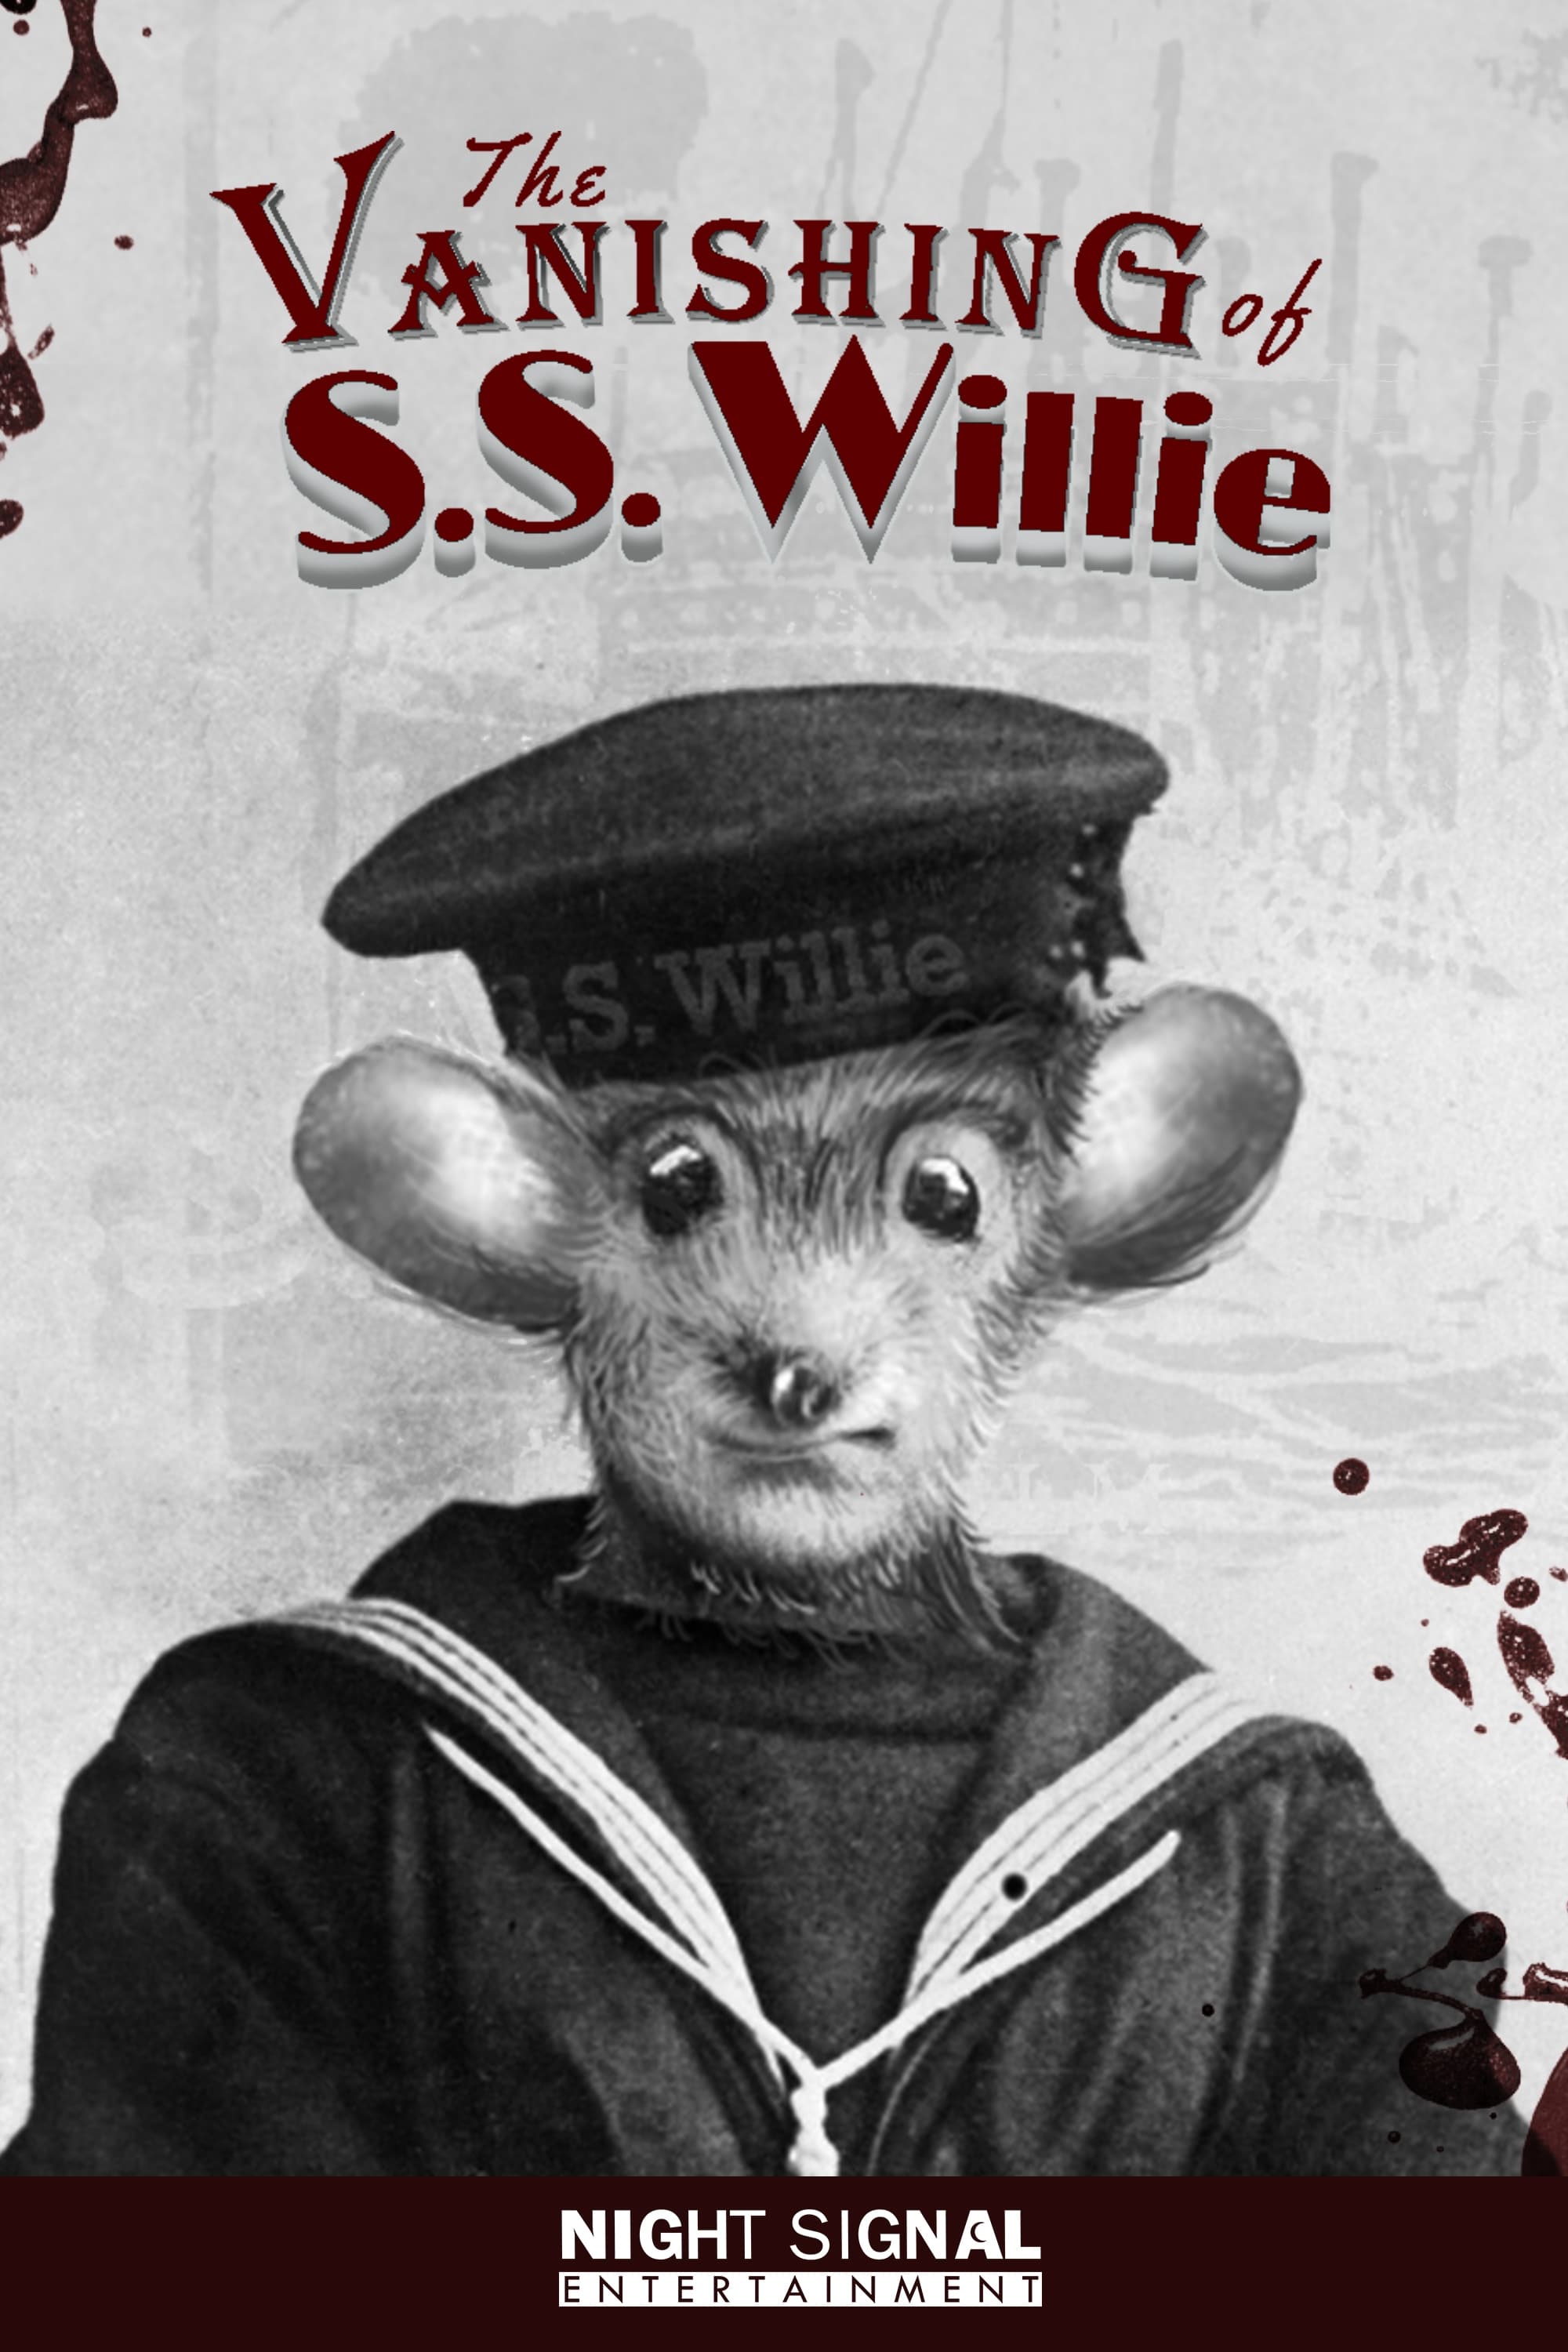 The Vanishing of S.S. Willie